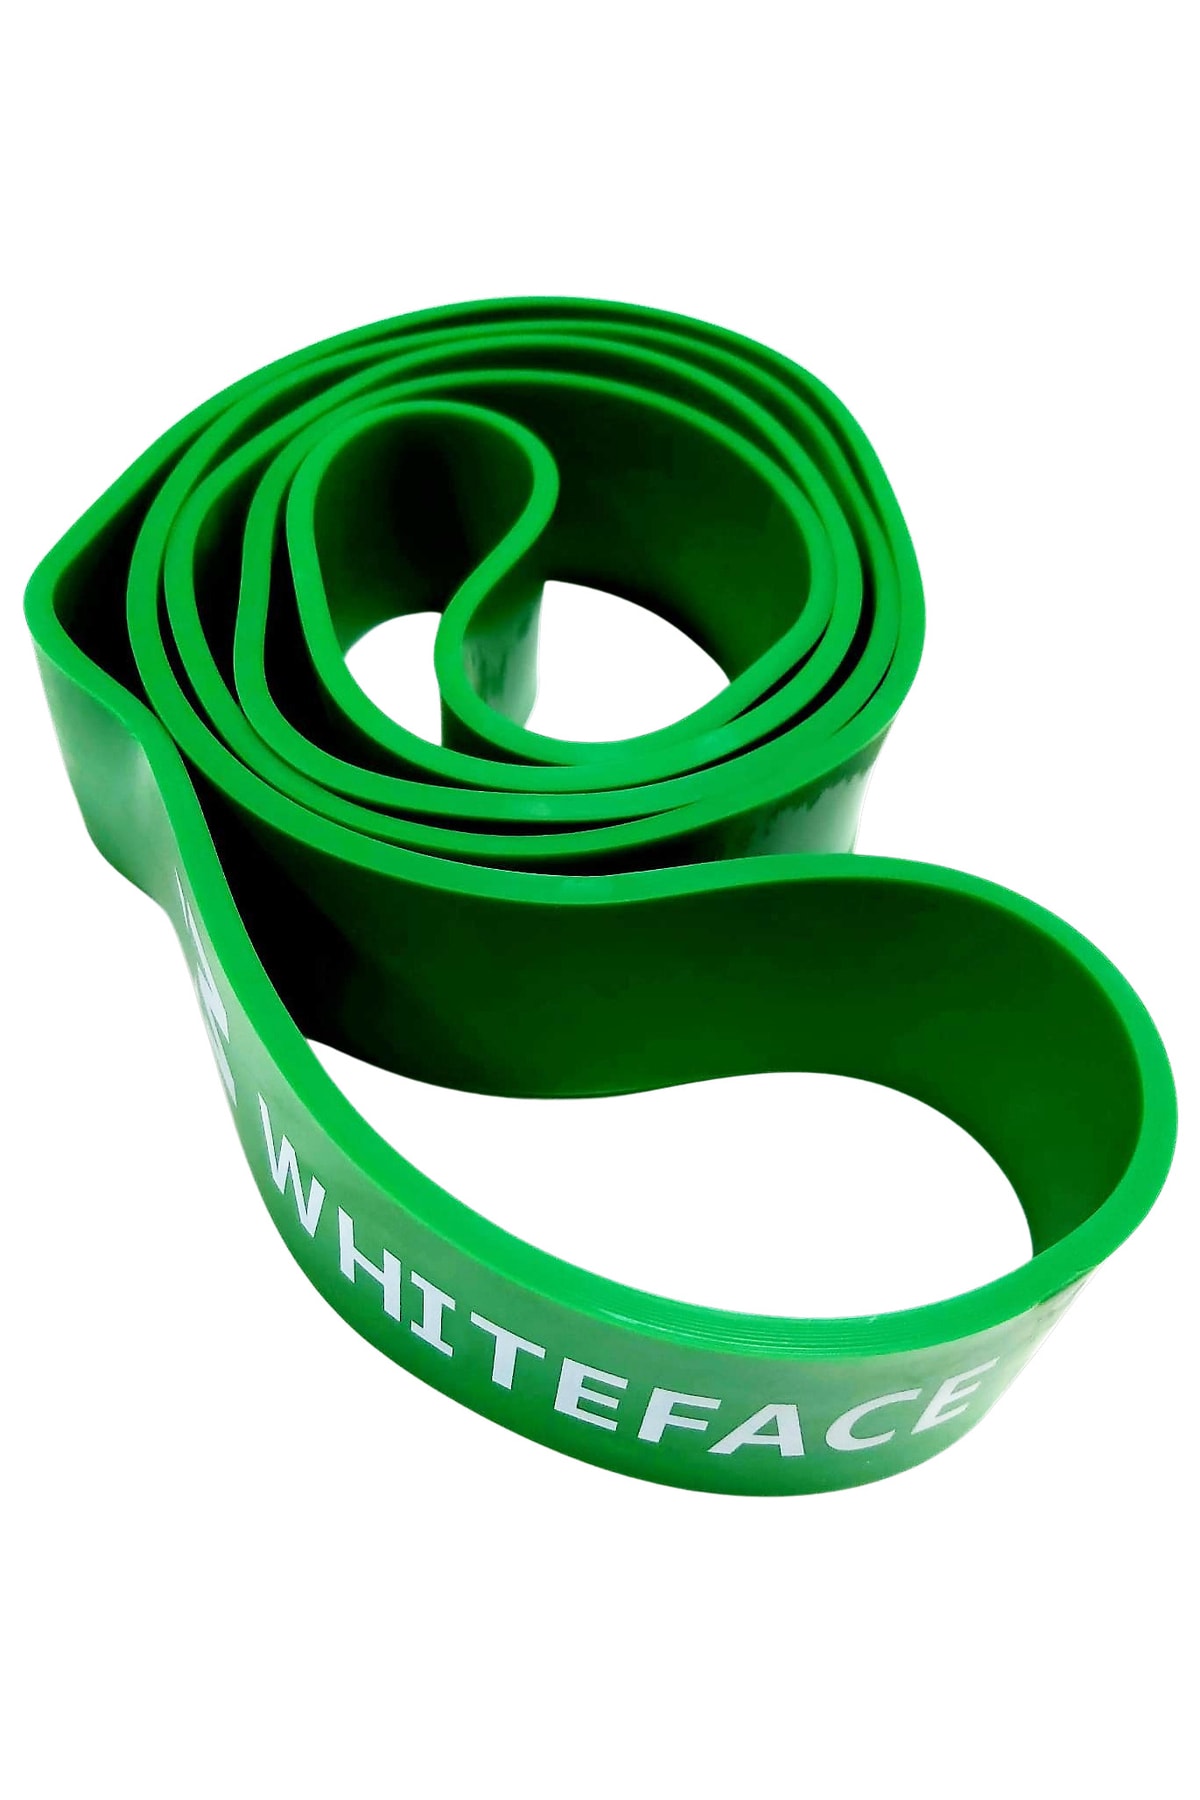 whiteface Direnç-Güç Lastiği Ultra-Sert 45mm Yeşil